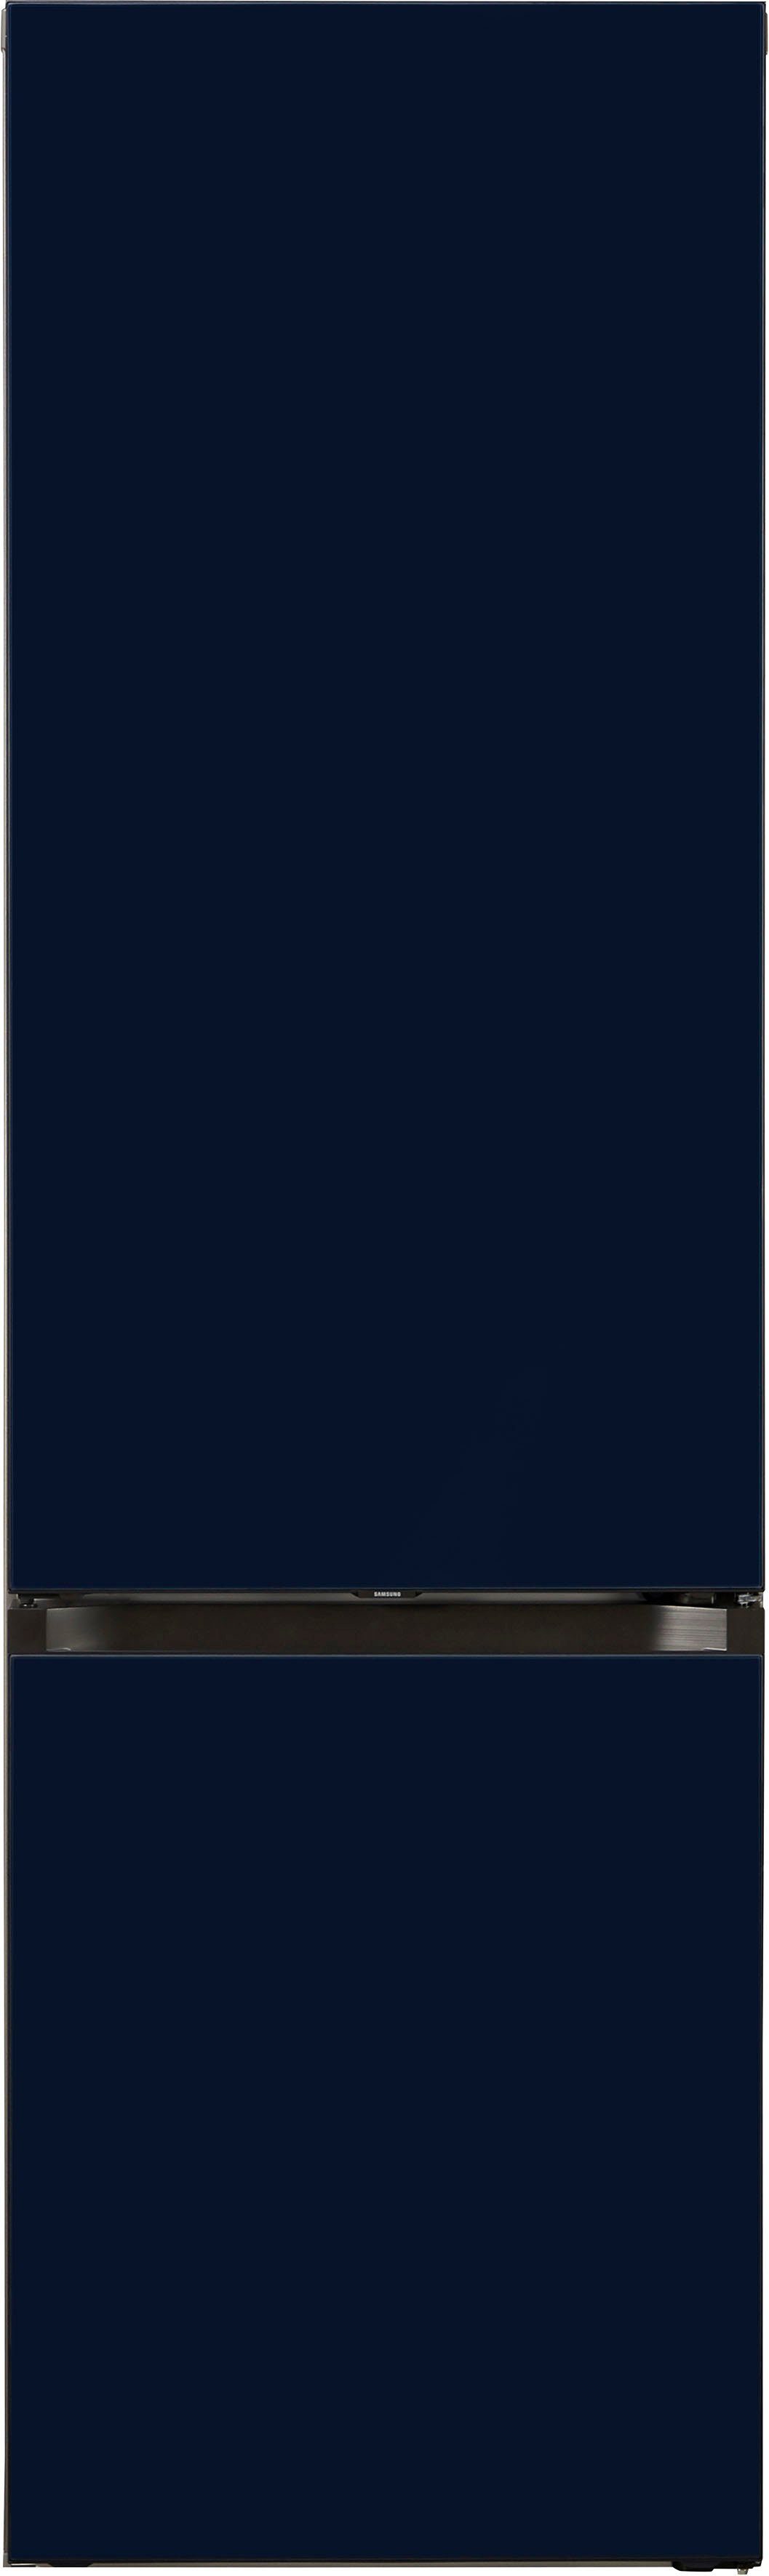 Samsung Kühl-/Gefrierkombination Bespoke RL38A6B6C41, cm 203 59,5 breit hoch, cm